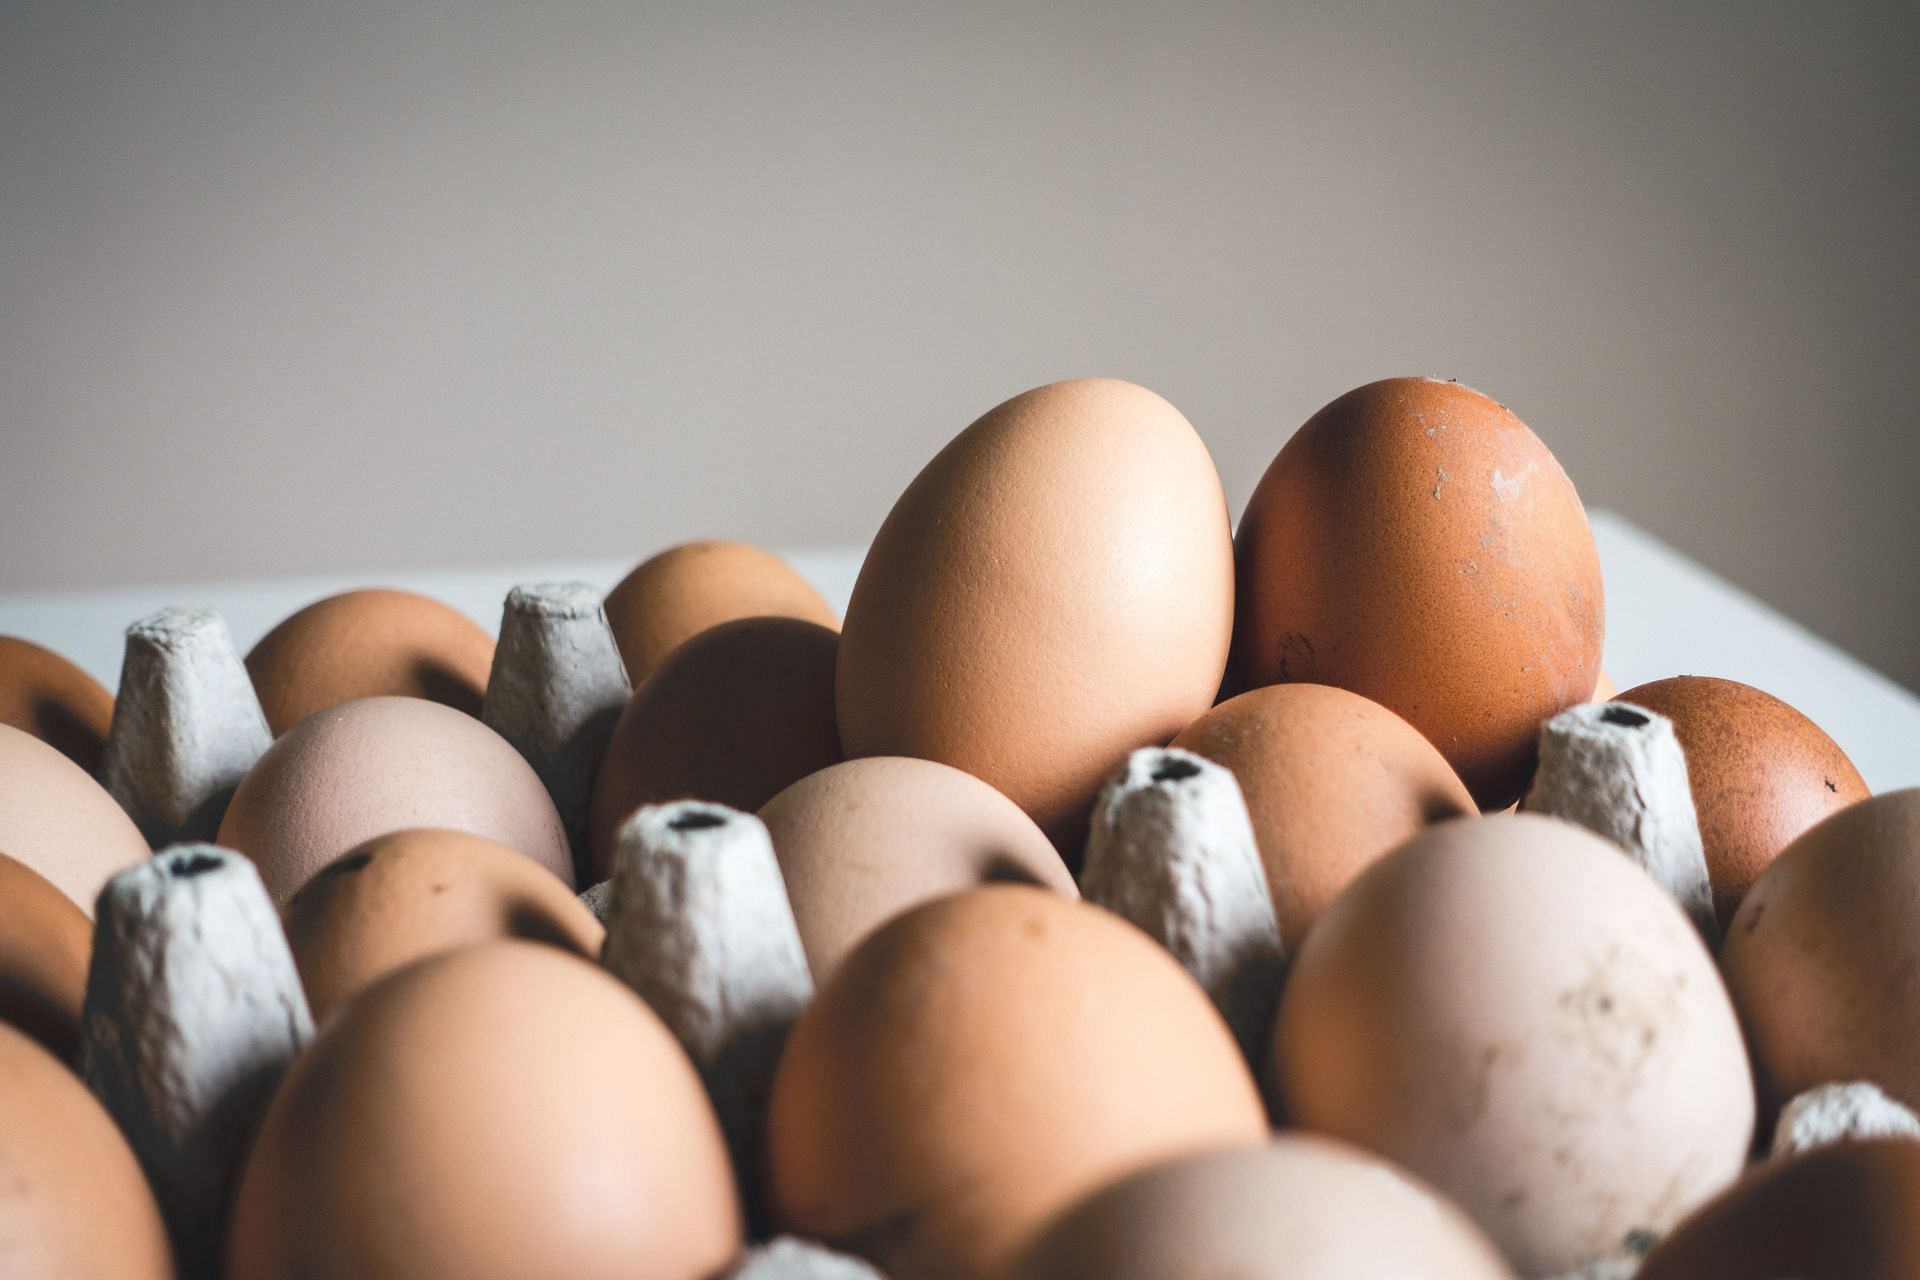 Eggs are one of the most power packed food. (Image via Unsplash / Jakub Kapunsak)